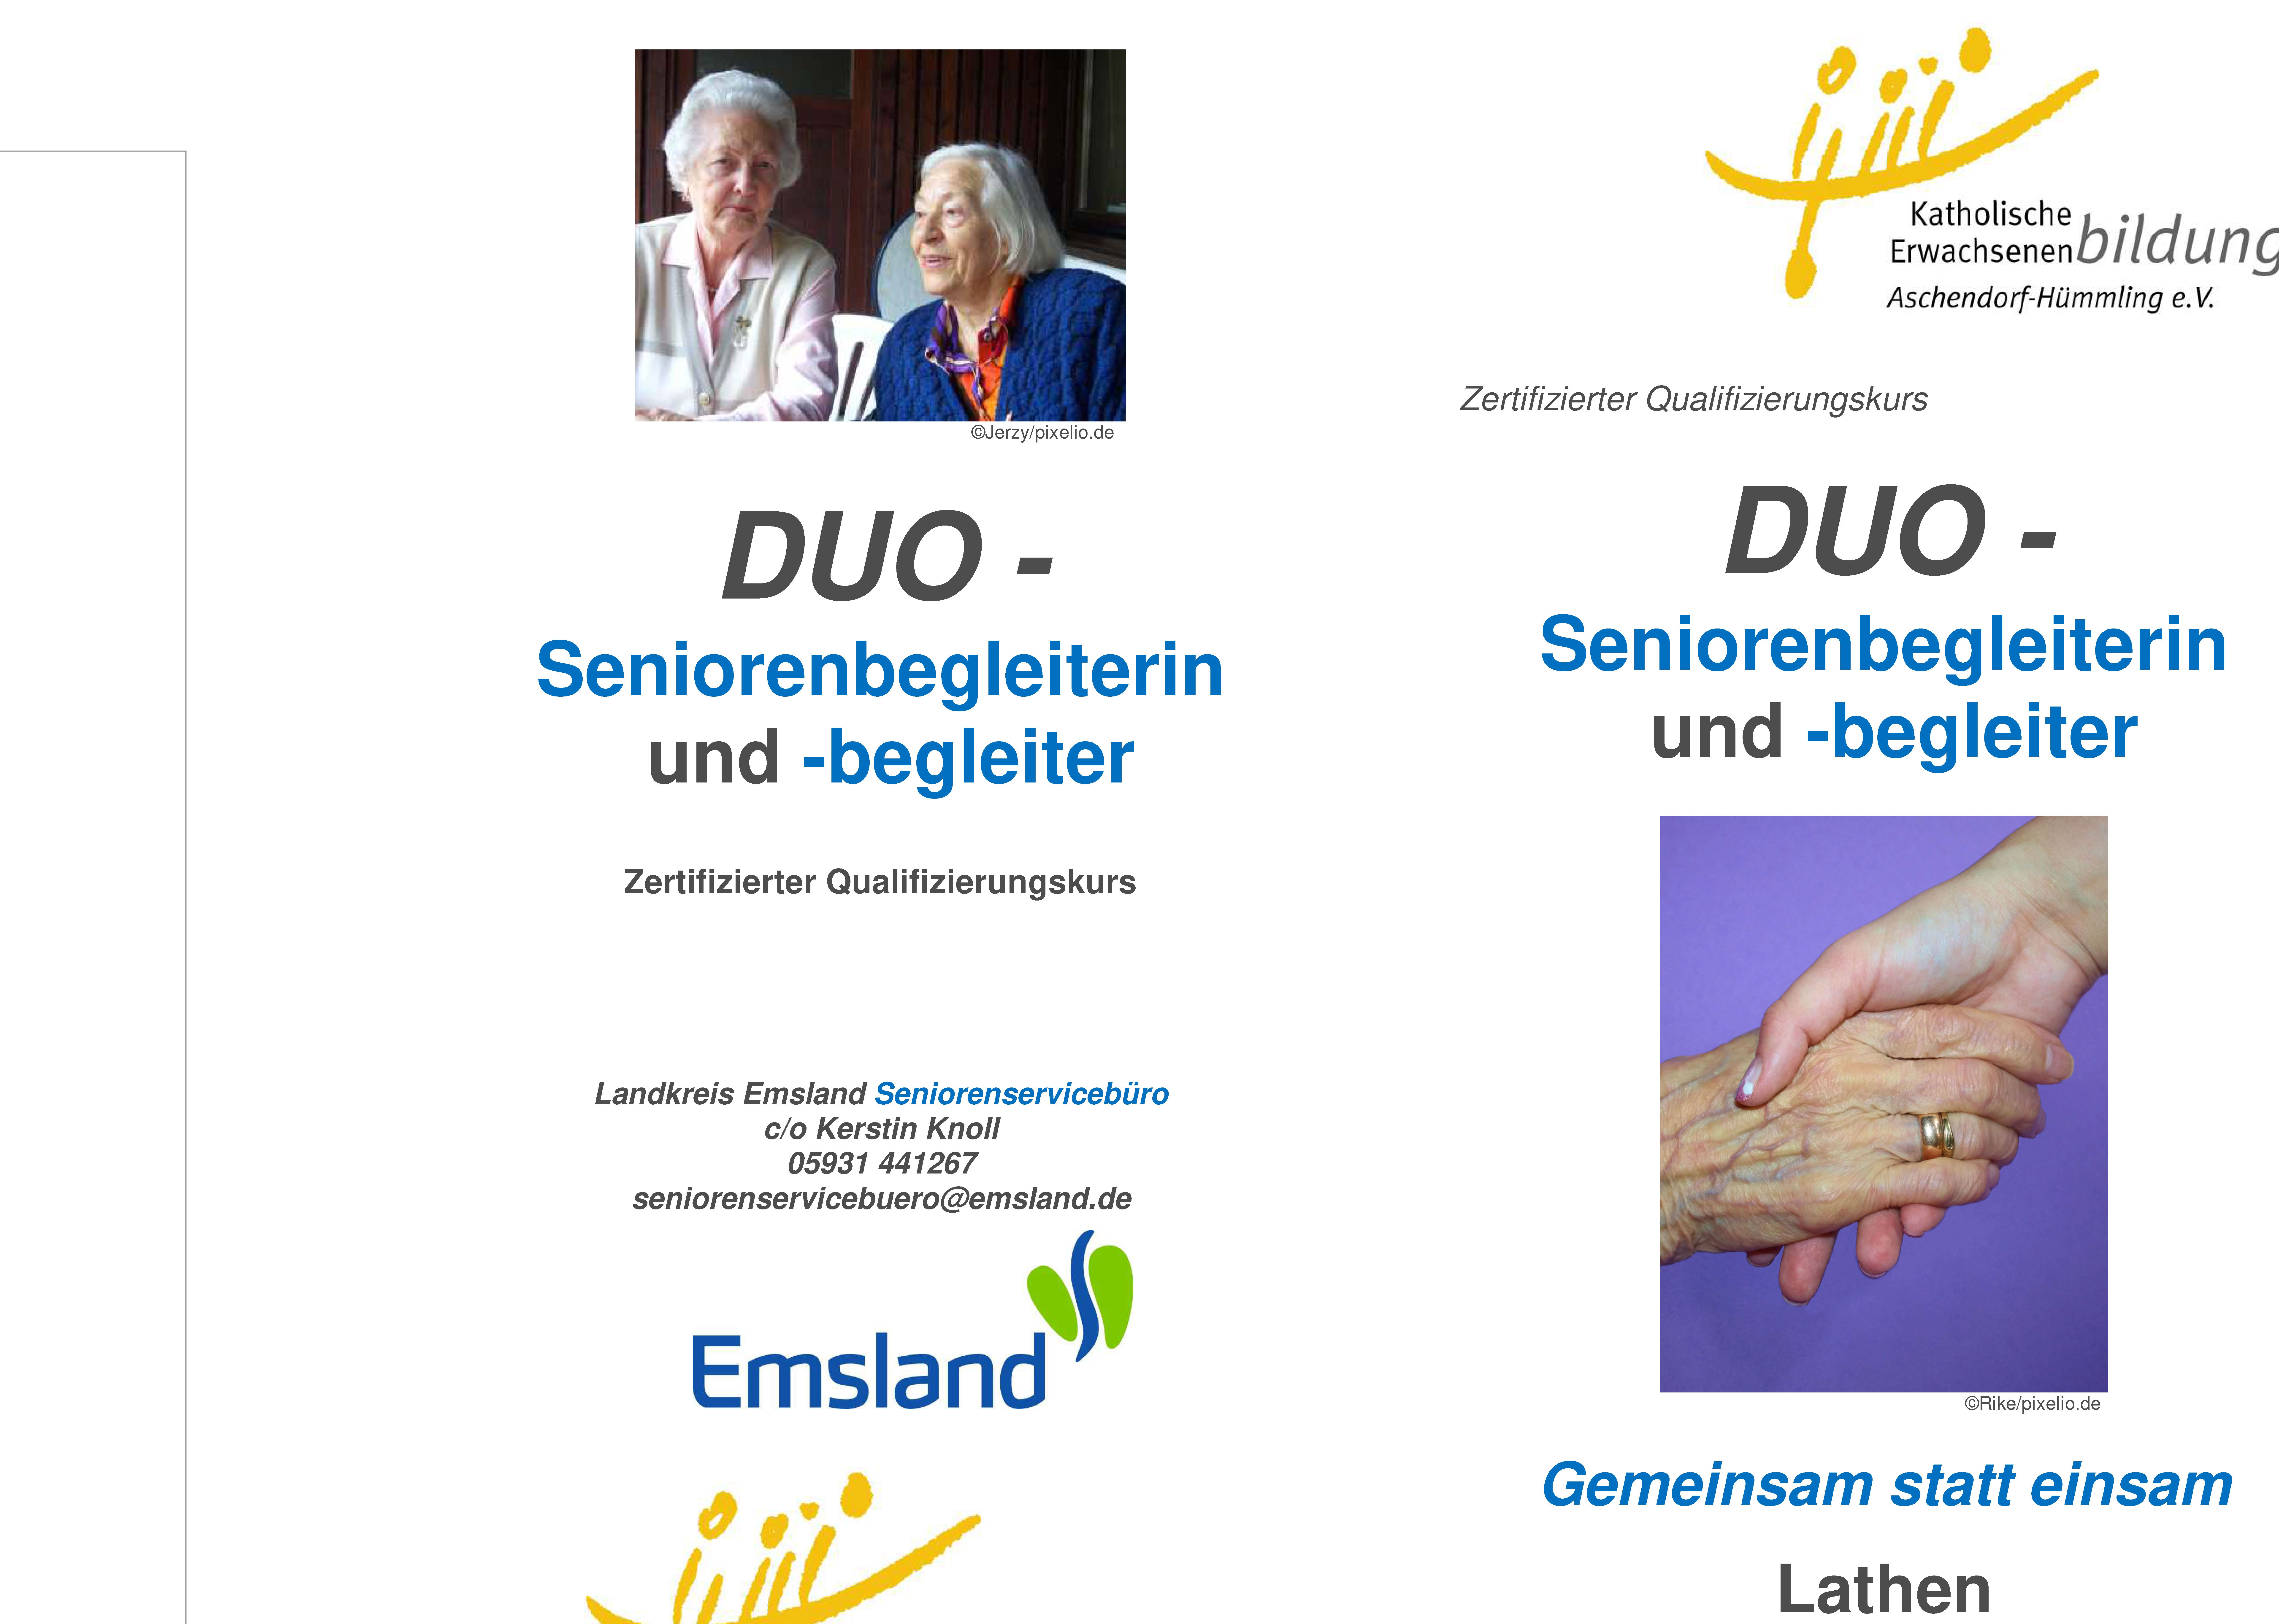 Anmeldungen sind noch möglich !!! In Lathen – zertifizierter Qualifizierungskurs DUO – Seniorenbegleiterin und -begleiter